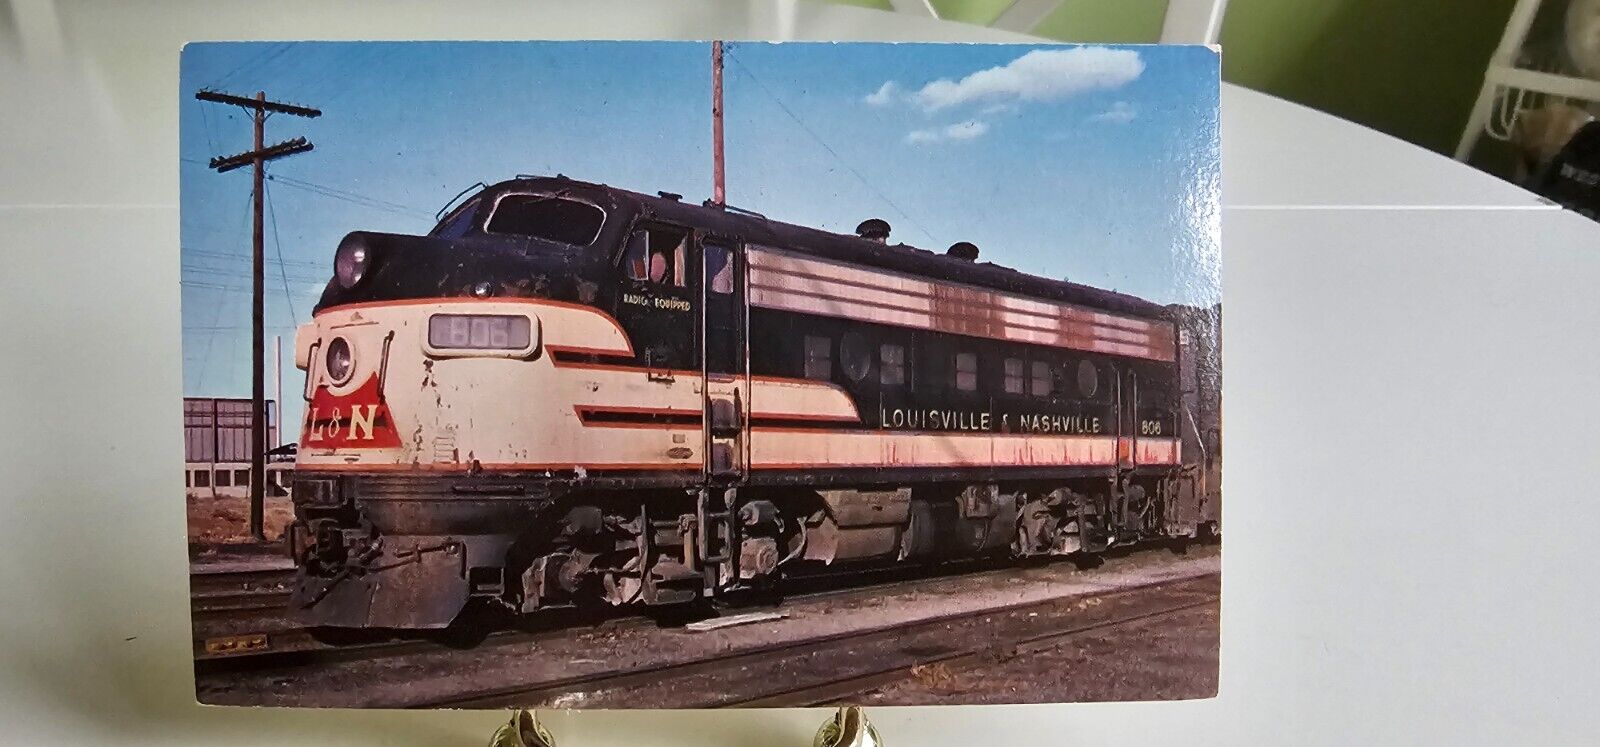 Louisville and Nashville 806 Diesel Engine Locomotive Postcard Train Railroad